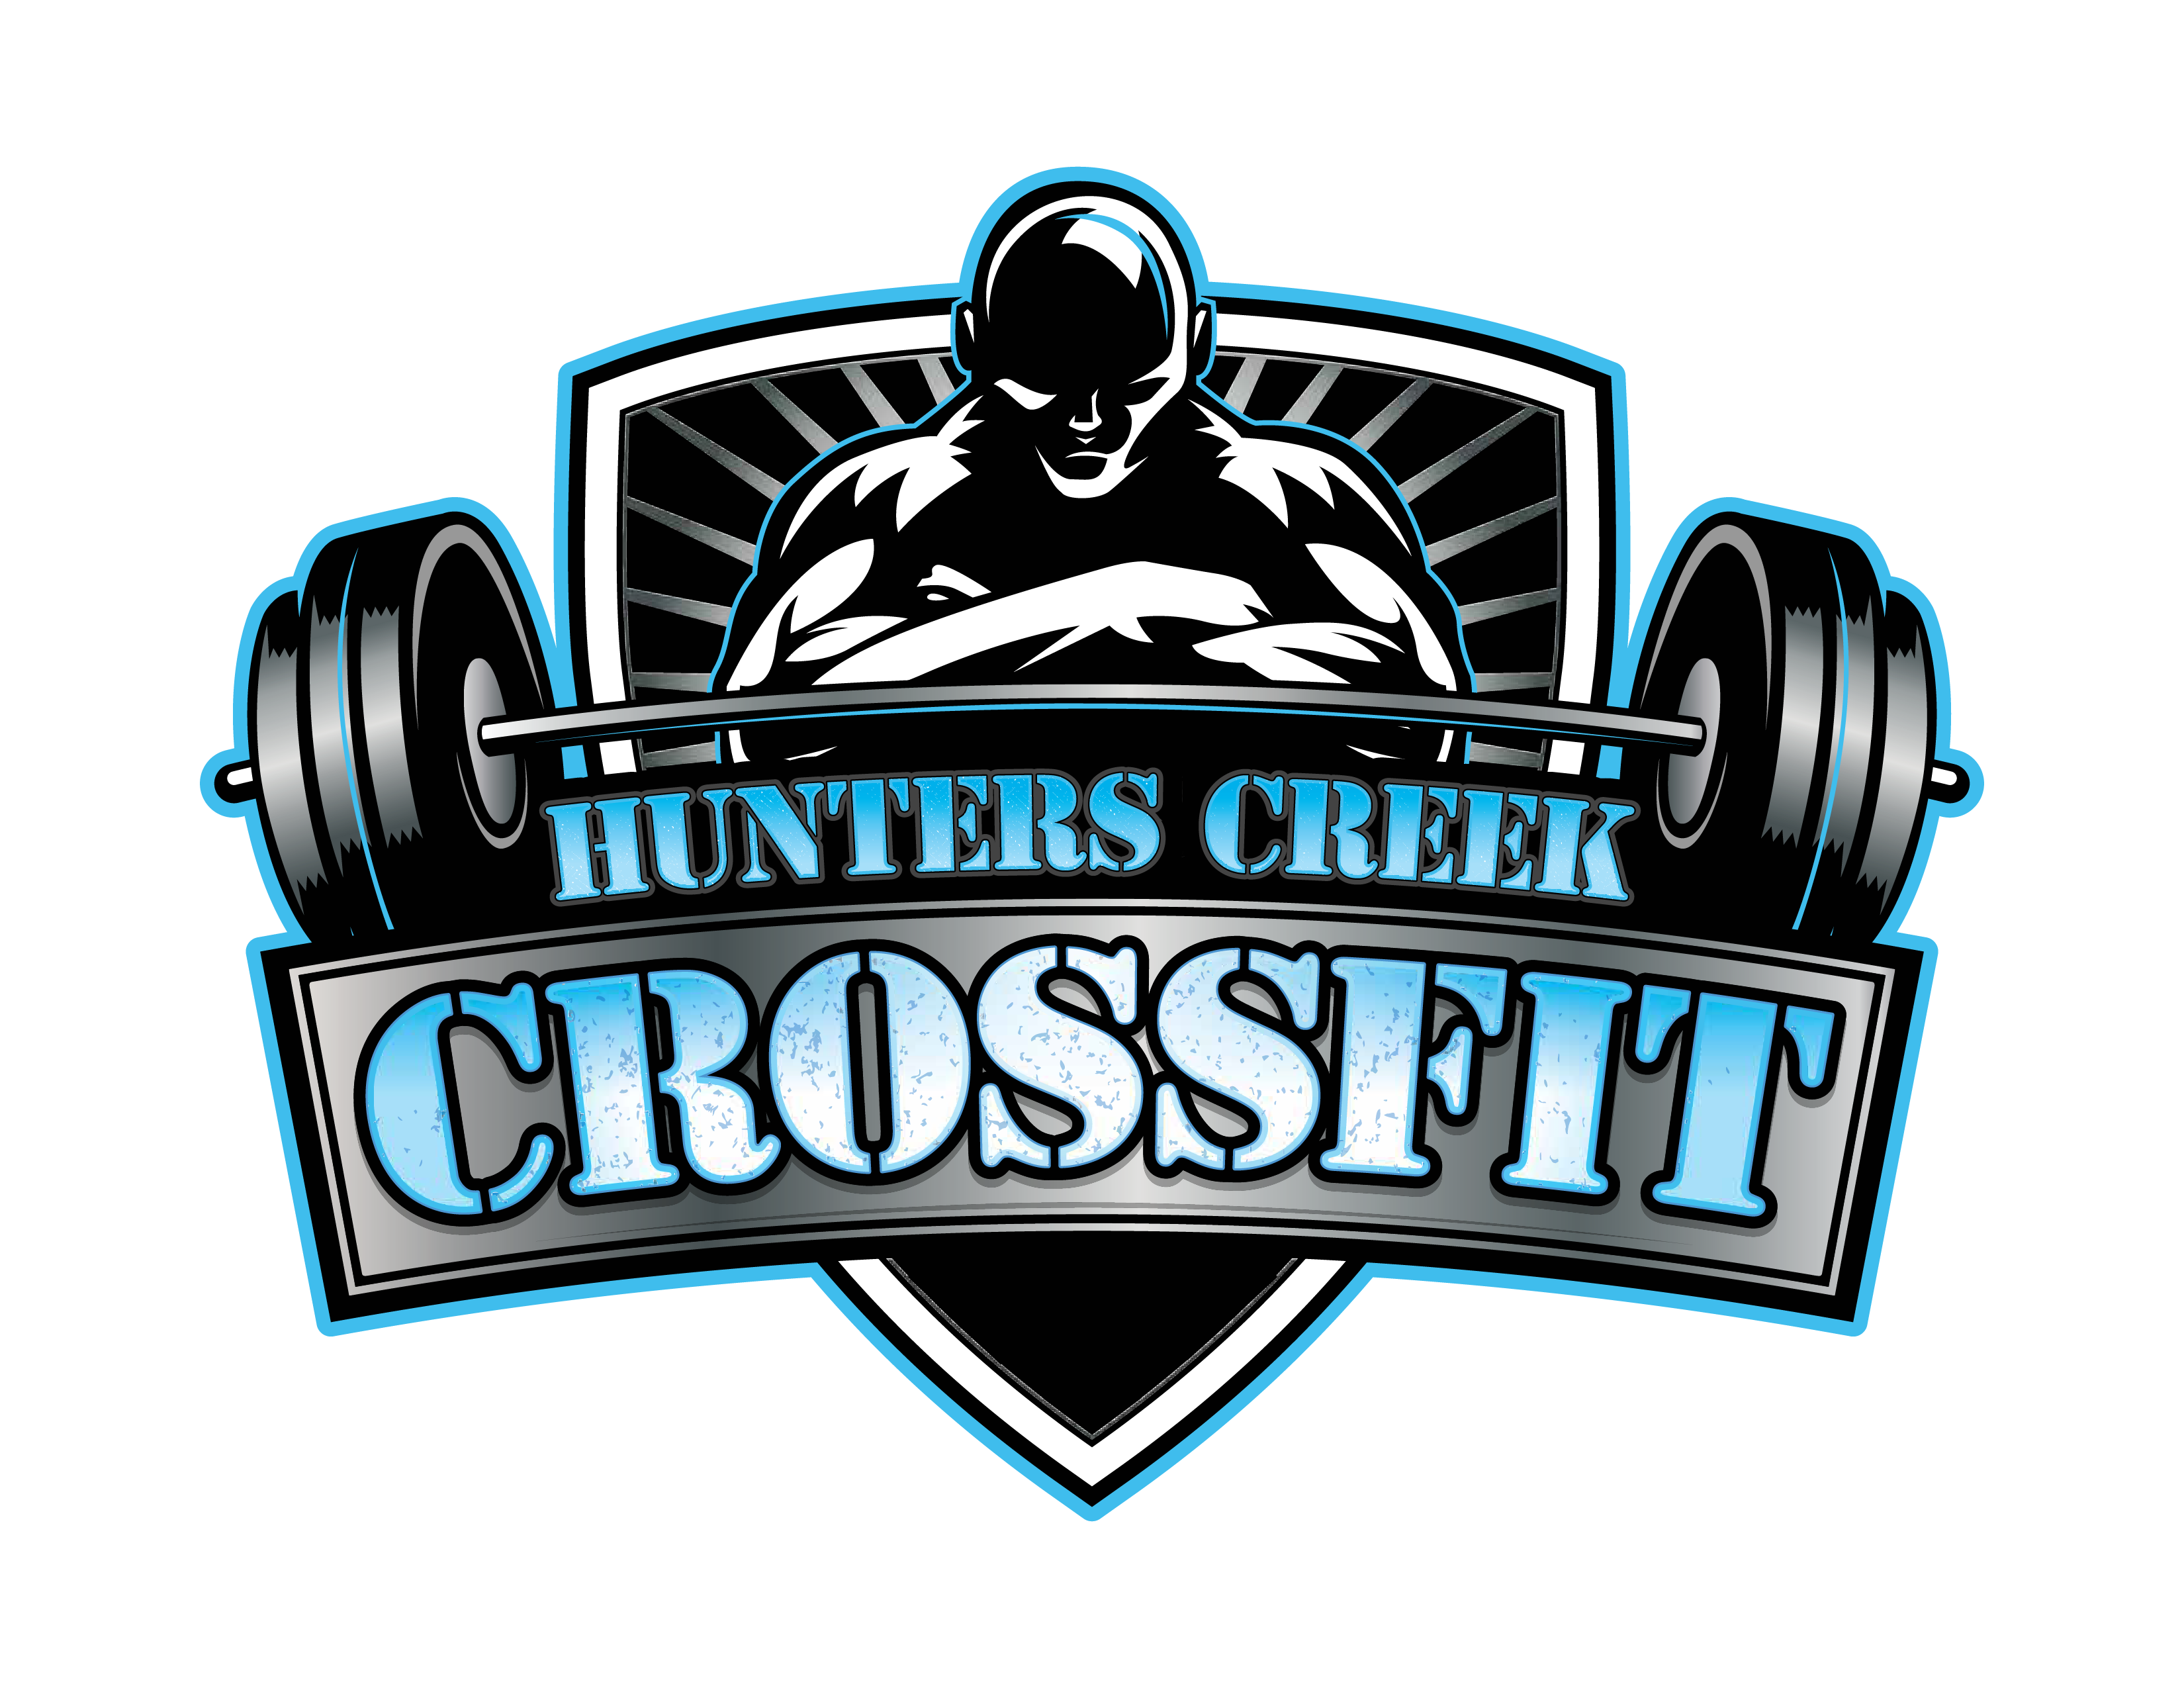 Hunters Creek CrossFit logo